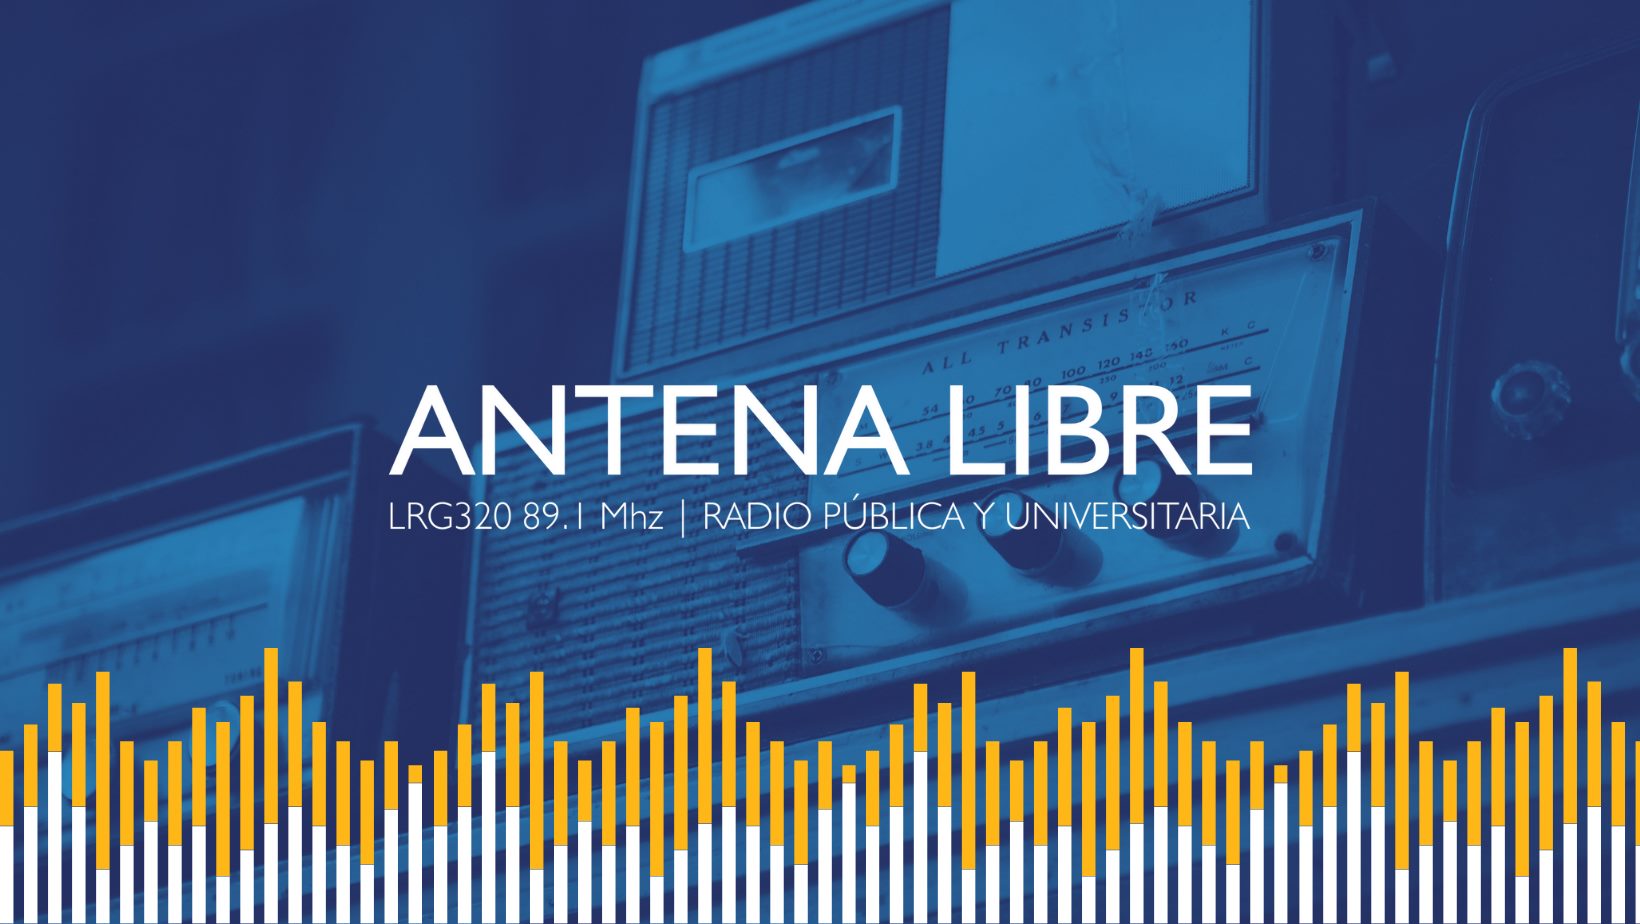 (c) Antena-libre.com.ar